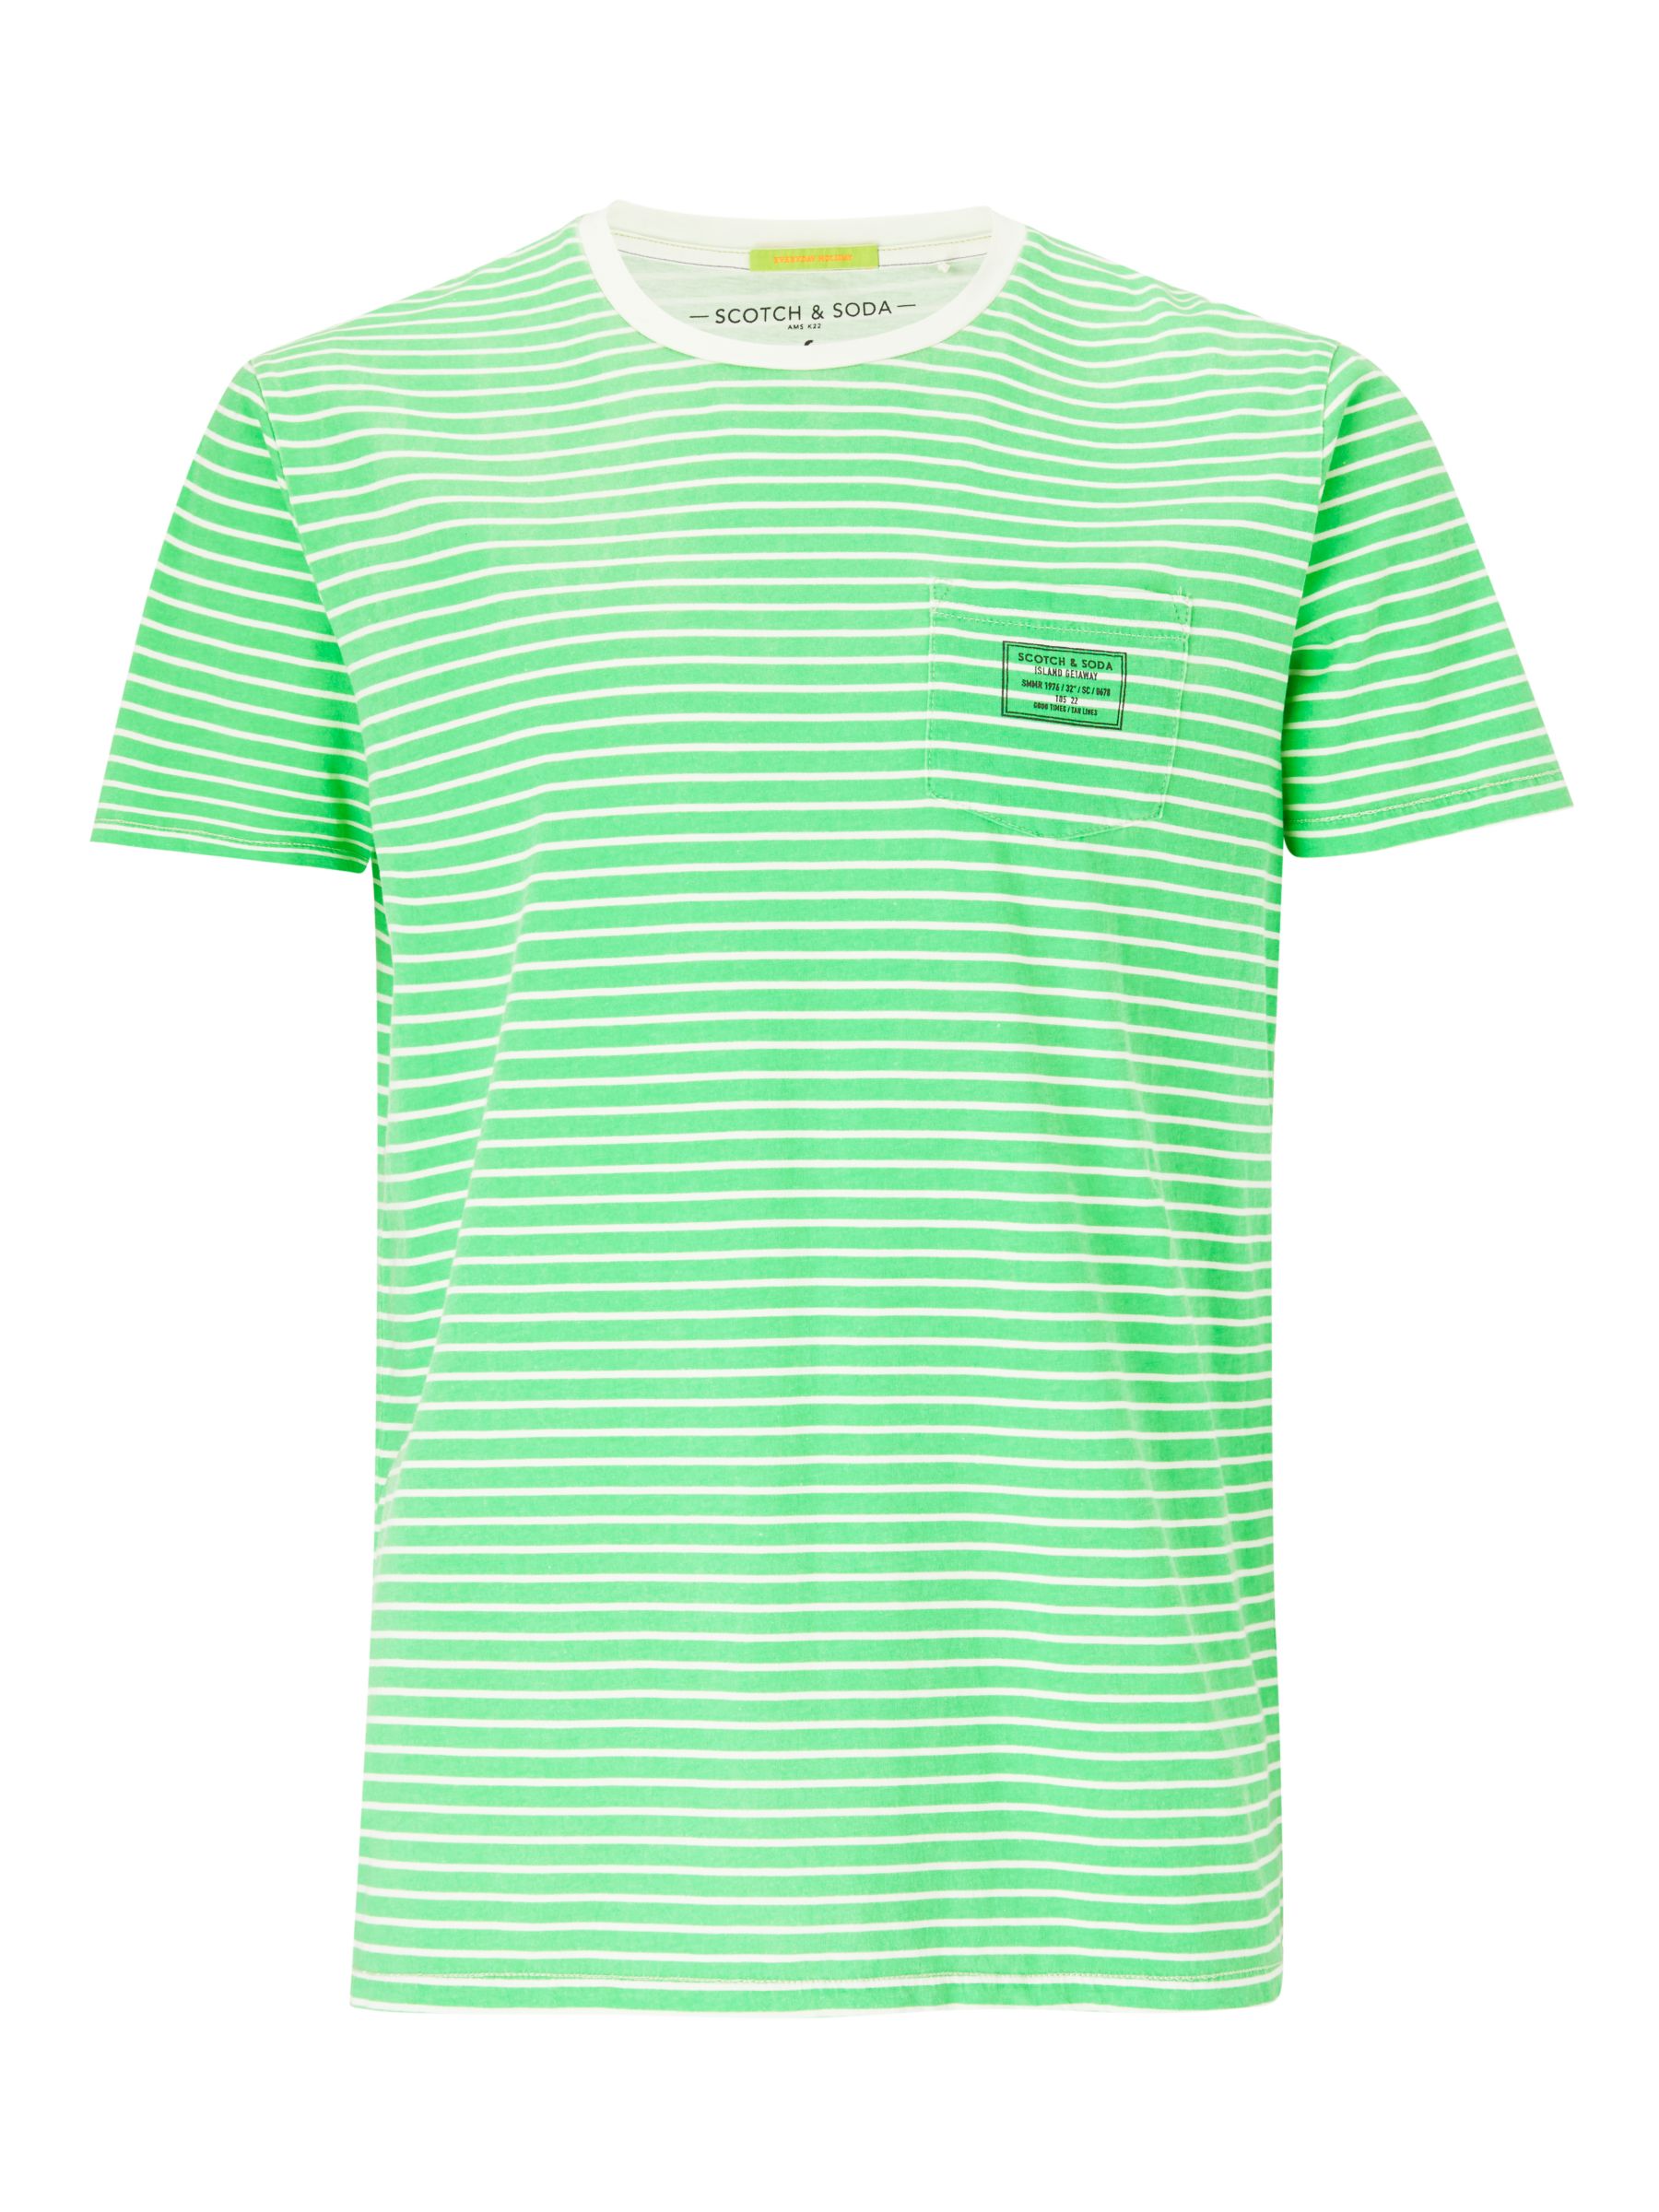 Scotch & Soda Garment Dye Stripe T-Shirt, Green at John Lewis & Partners